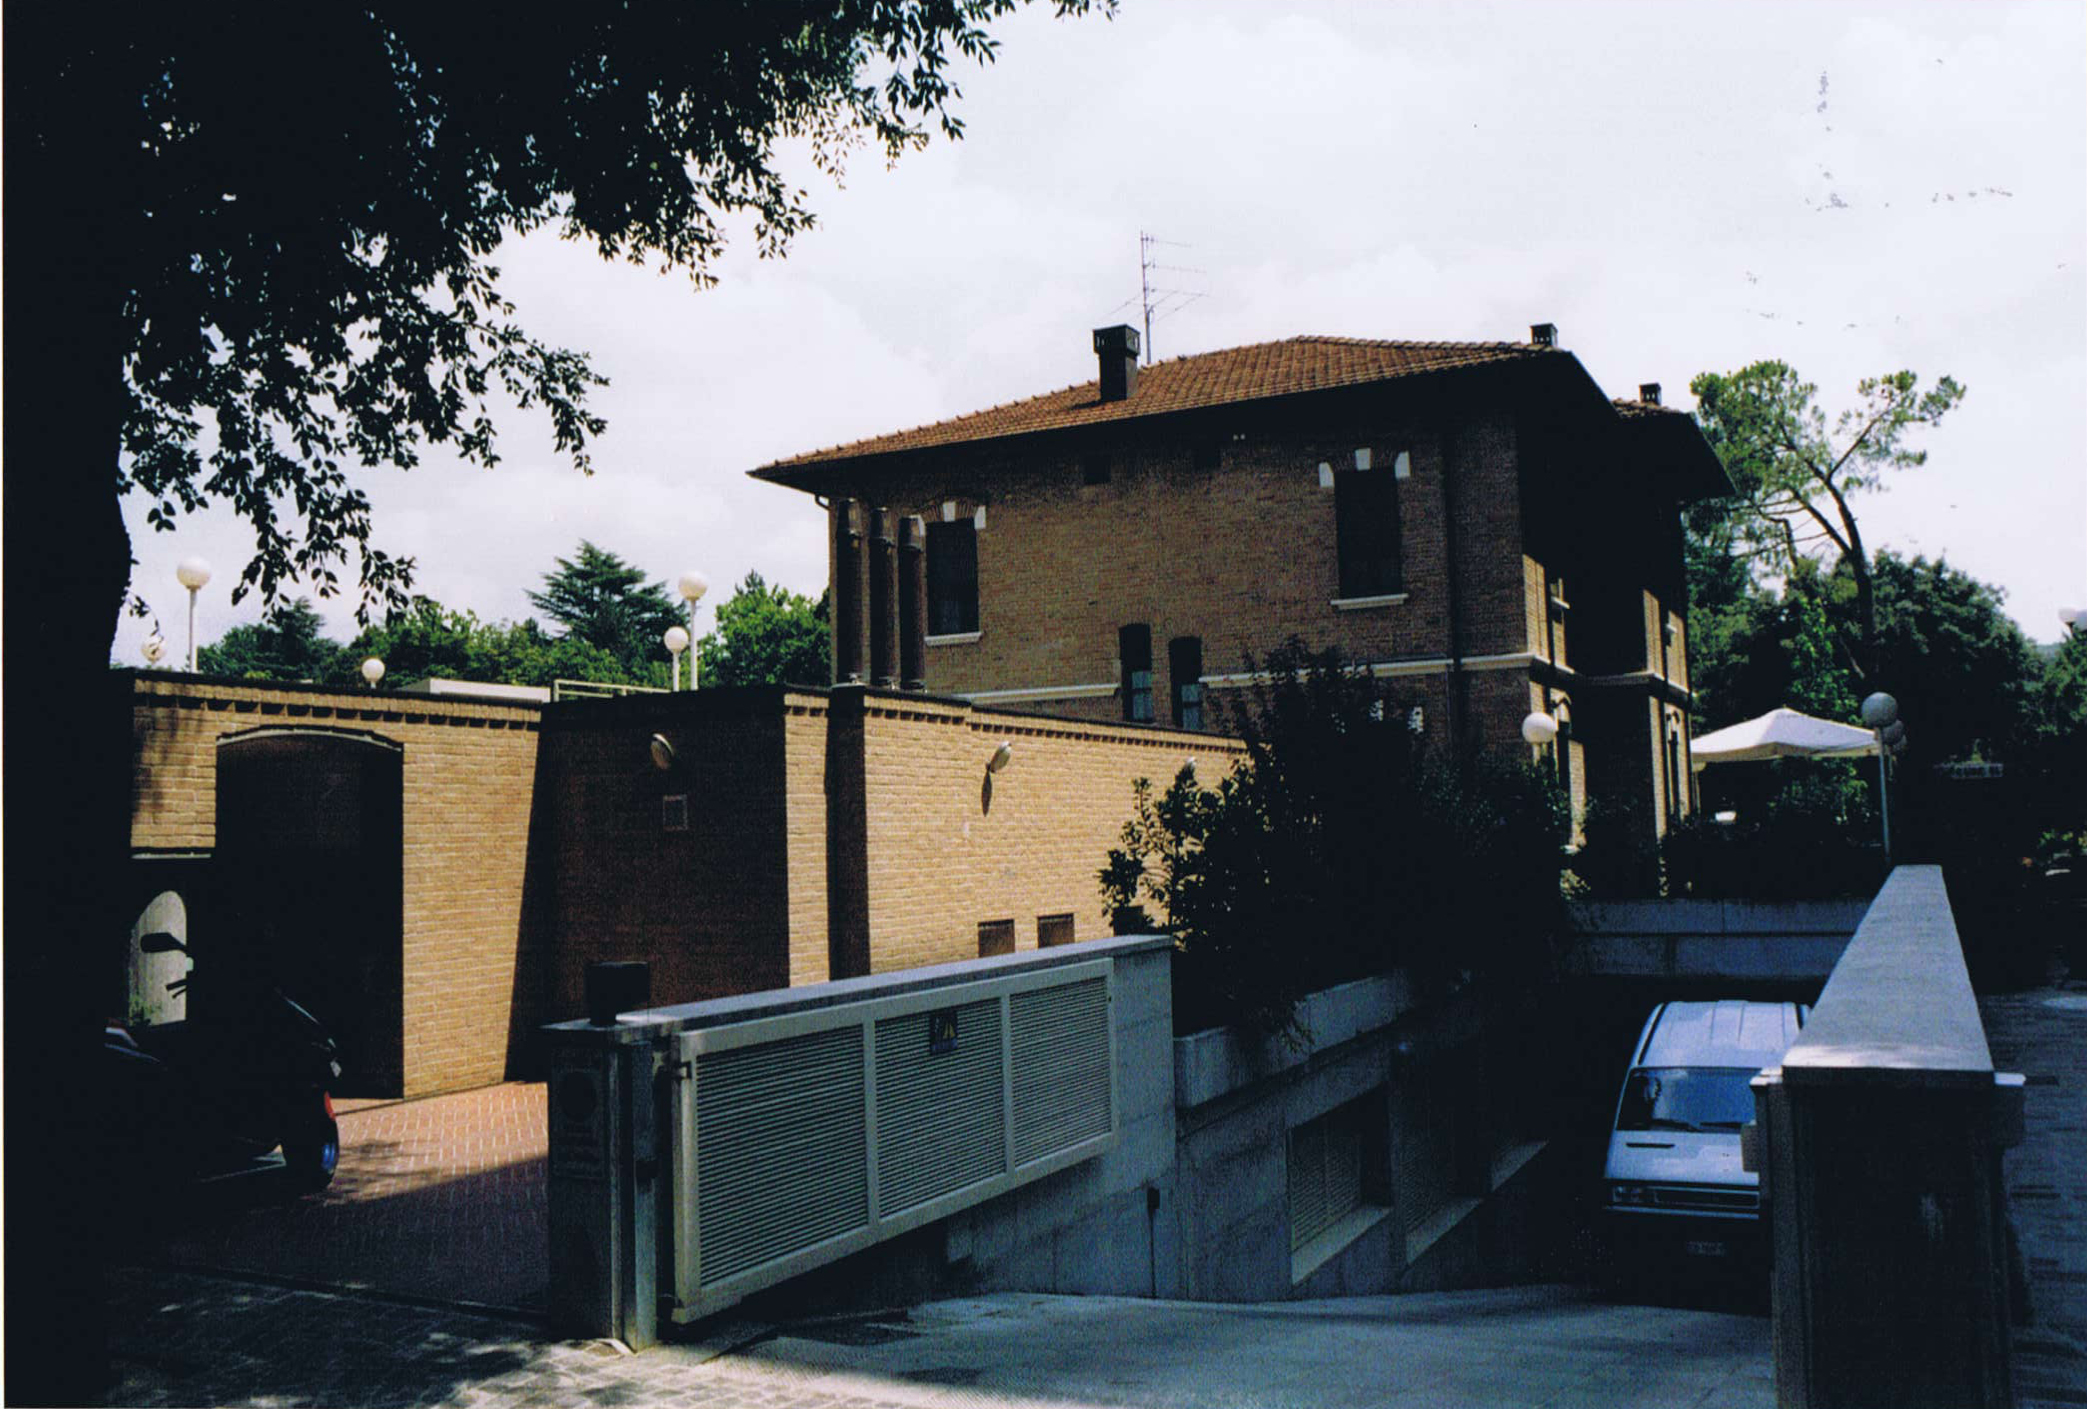 Villa Poggiolini (villa, privata) - Castrocaro Terme e Terra del Sole (FC)  (XX)